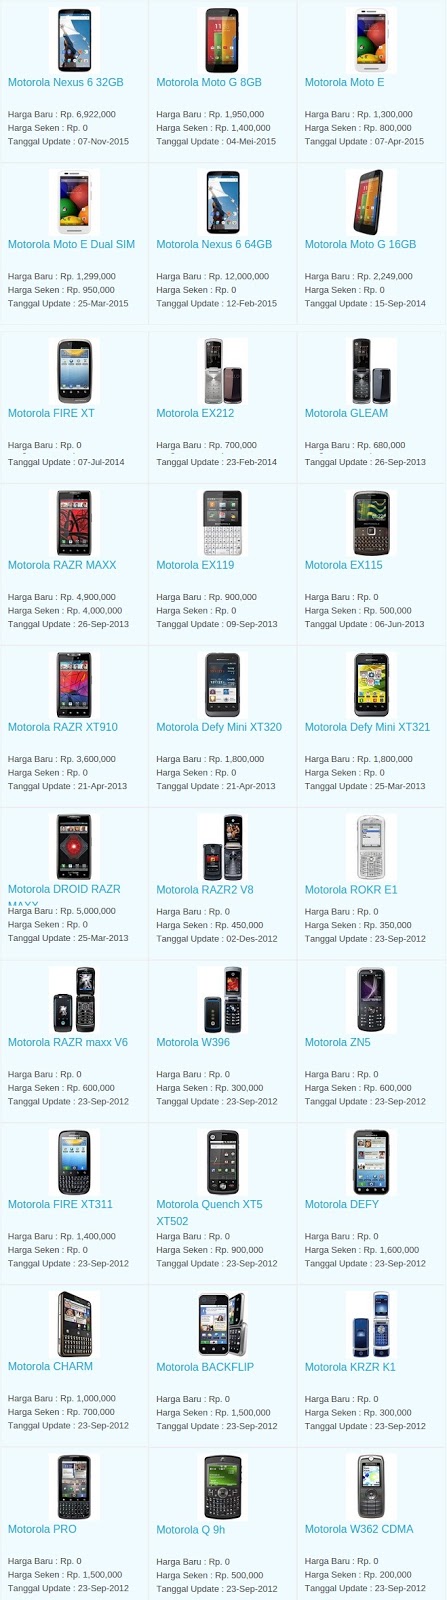 Daftar Harga Terbaru Hp Motorola Maret 2016